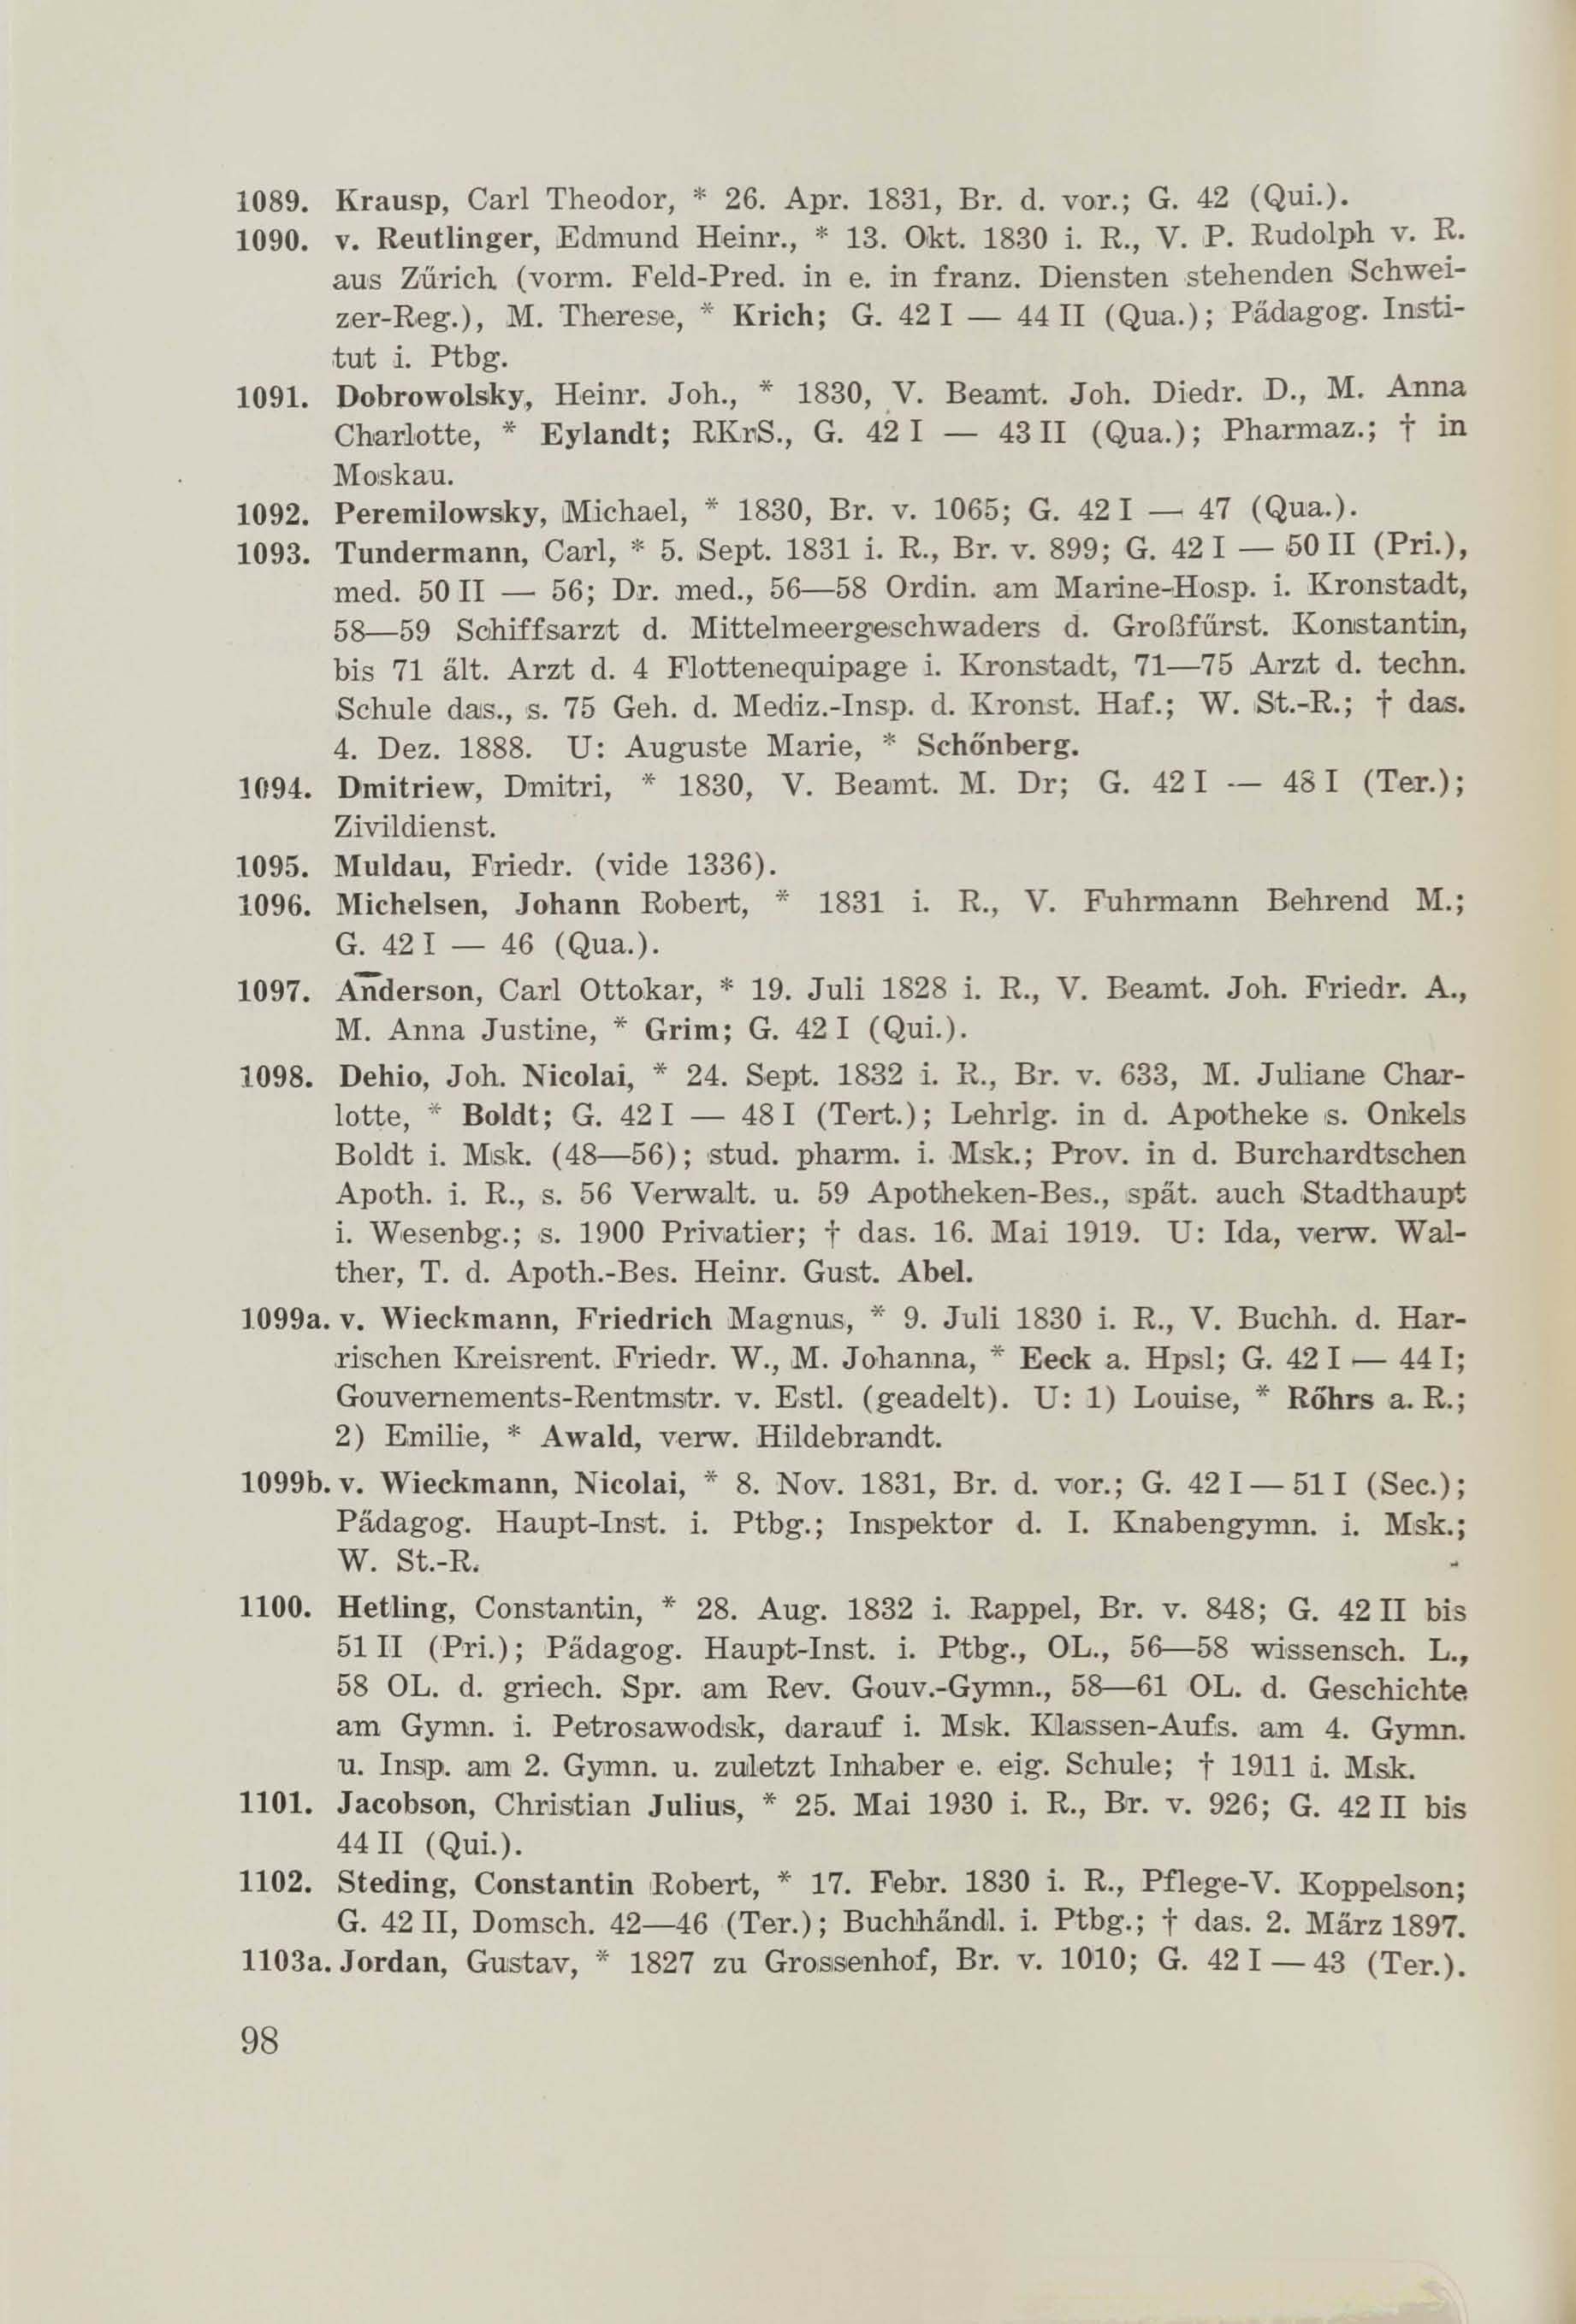 Schüler-Verzeichnis des Revalschen Gouvernements-Gymnasiums 1805–1890 (1931) | 108. (98) Main body of text